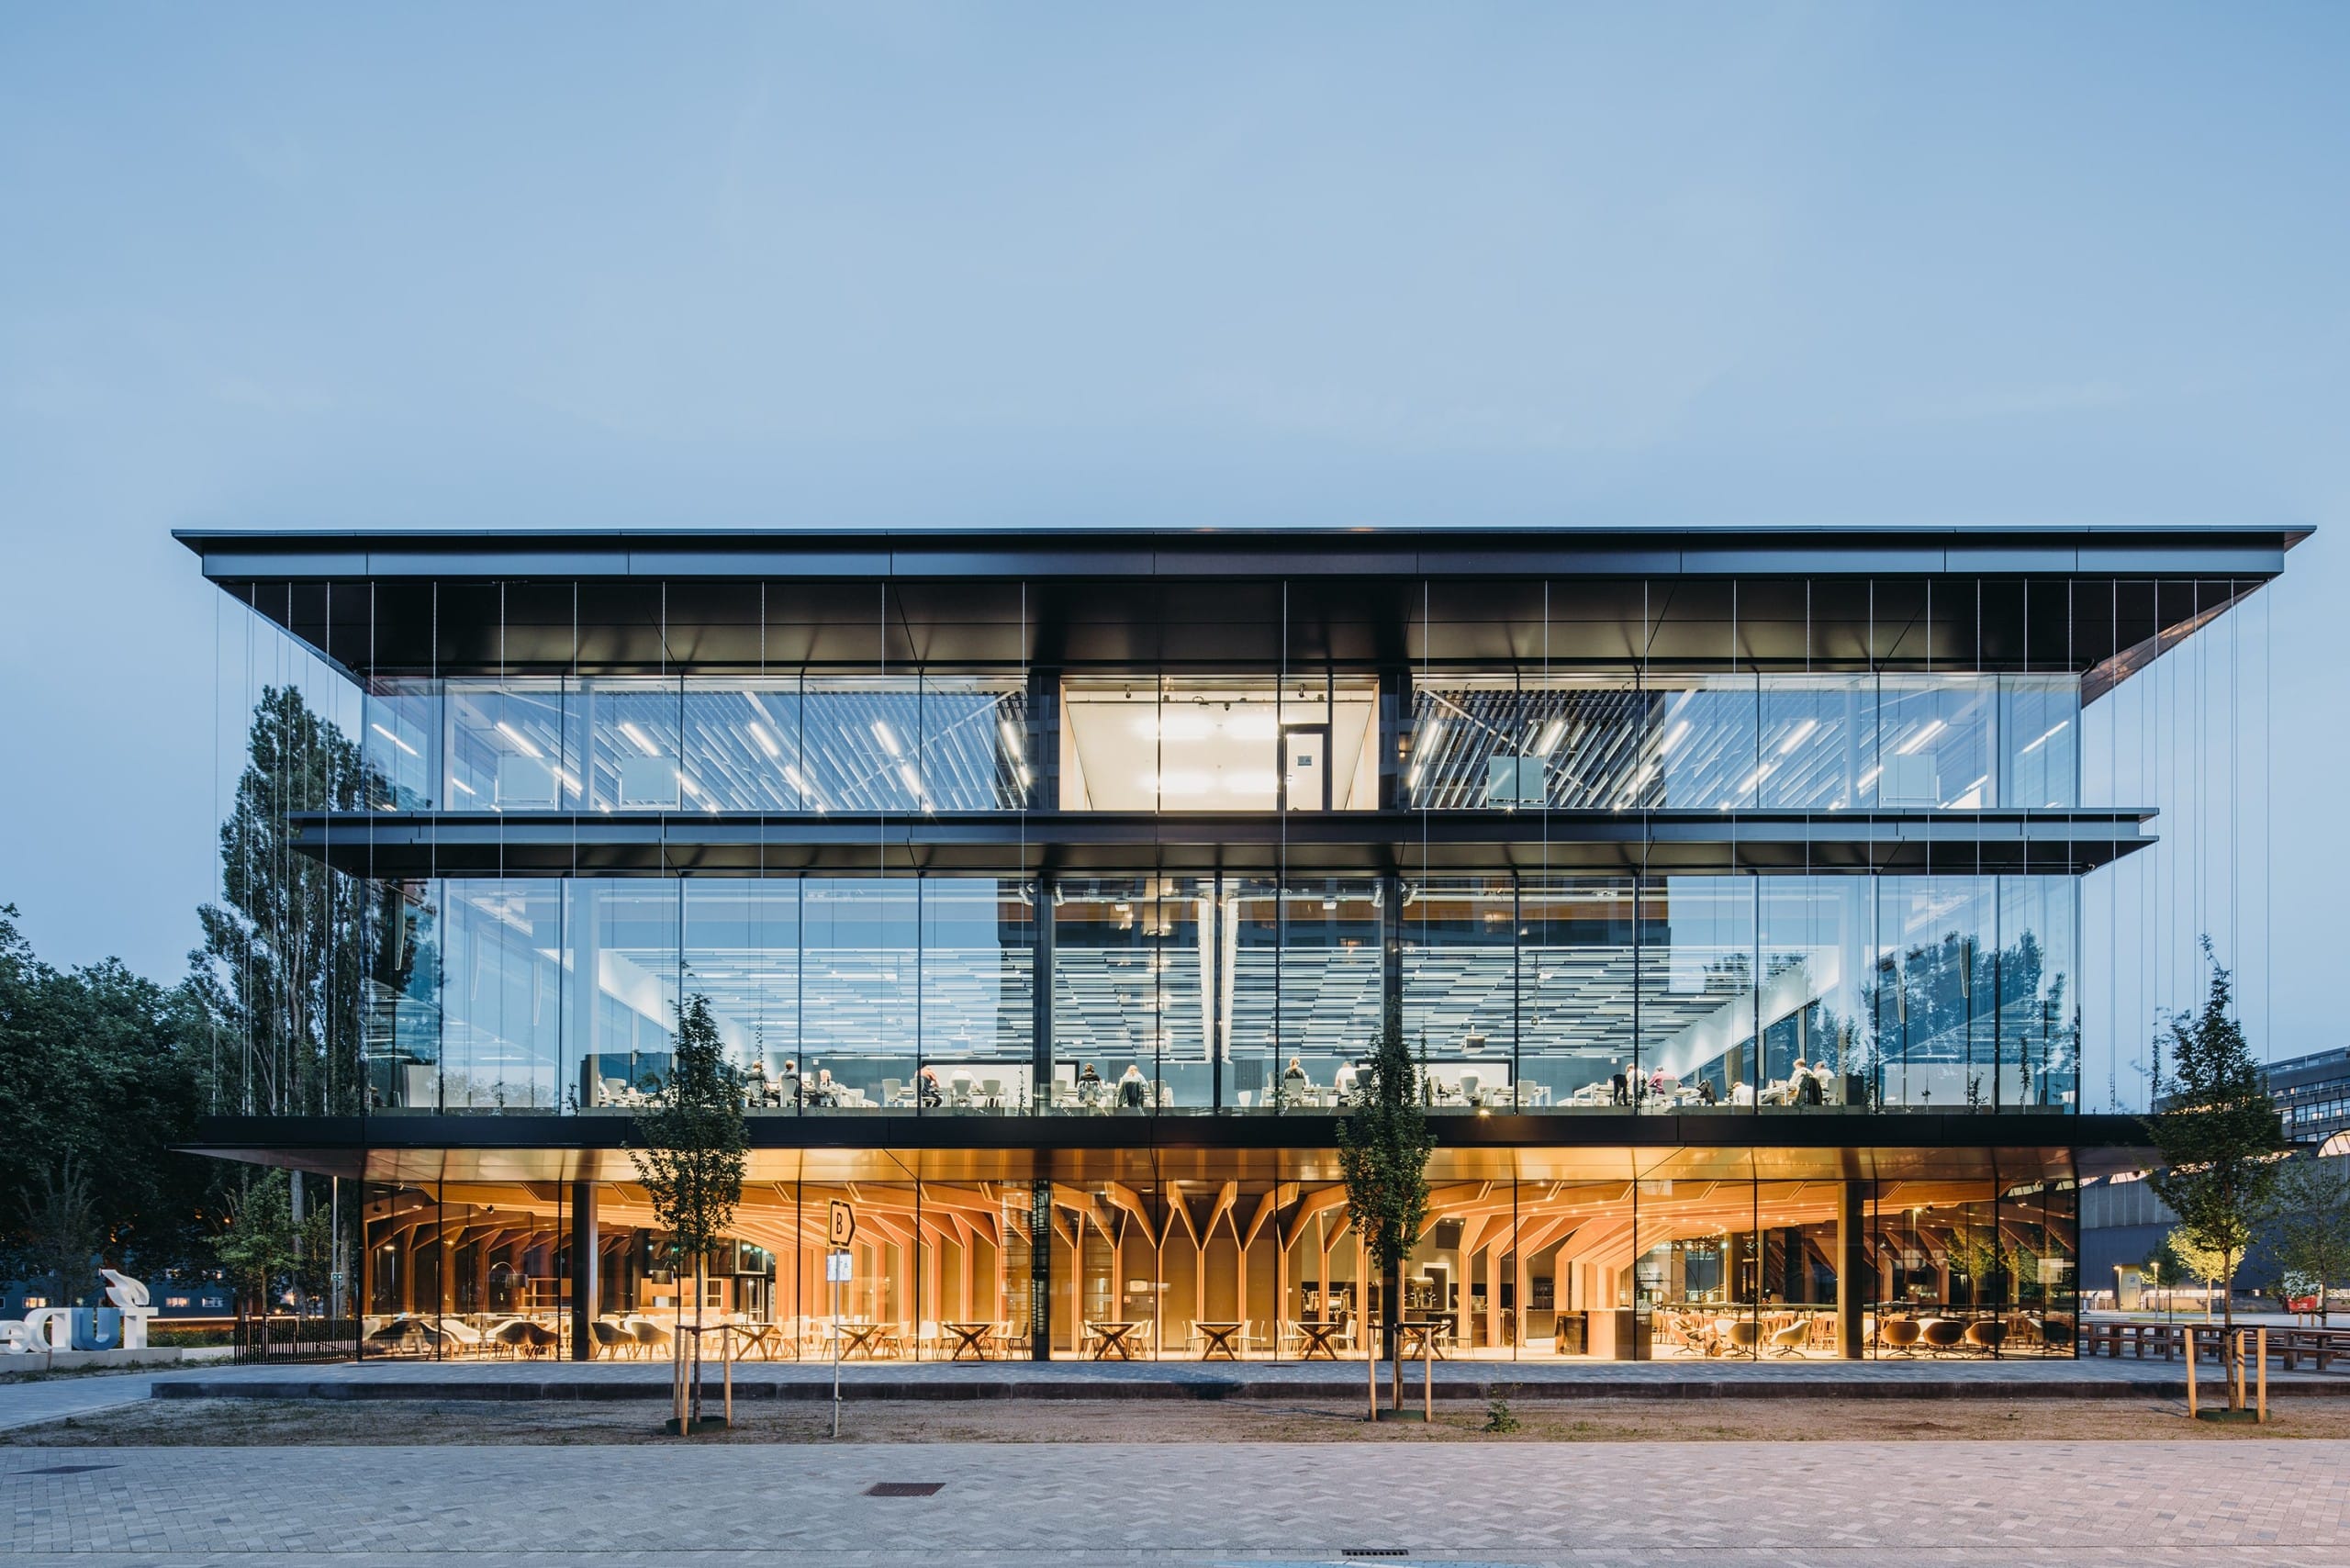 Das fakultätsübergreifende Gebäude Echo an der TU Delft zeichnet sich durch sein zukunftweisendes Design aus. Foto: ©Evabloem